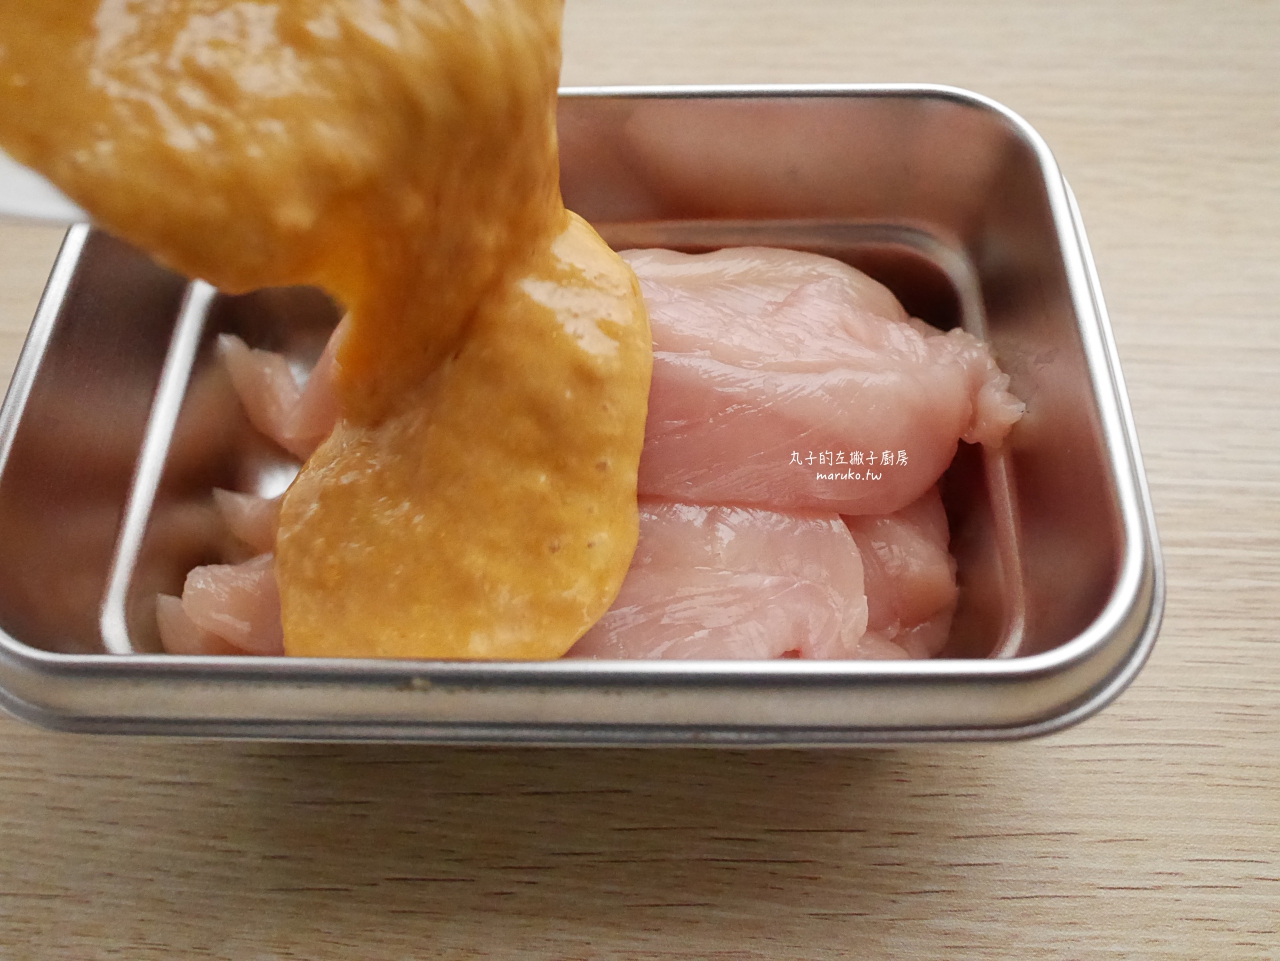 【食譜】嫩煎雞胸肉 日清炸雞粉用法 這樣做雞肉更香嫩 @Maruko與美食有個約會